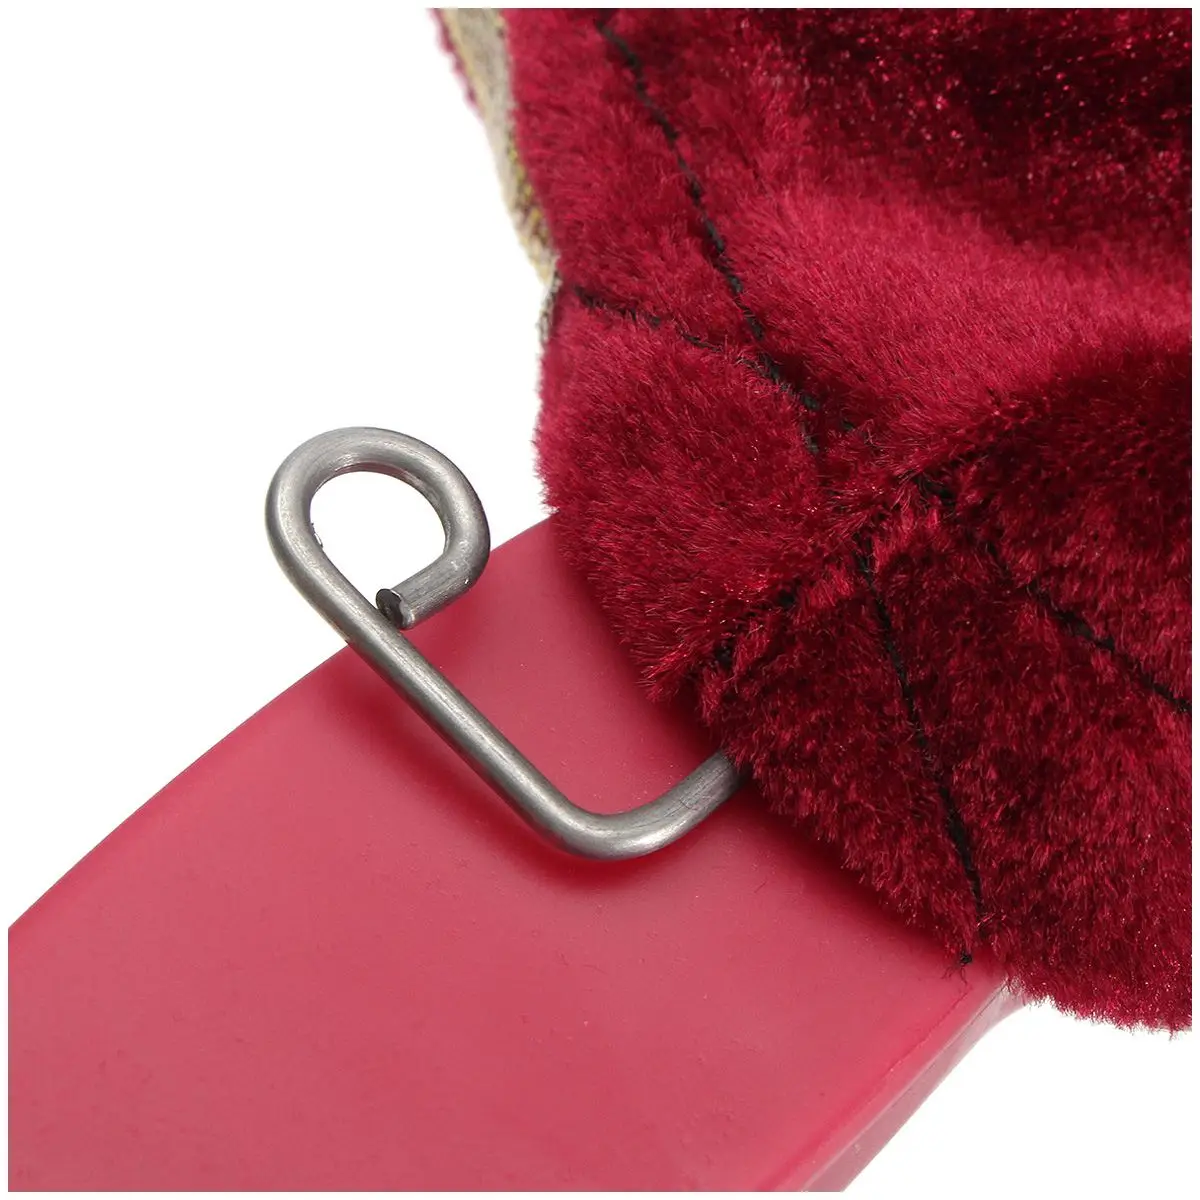 AINY-Red Magic Change сумка/Zip сделать элементы появляются/исчезают переключатель весело трюк реквизит